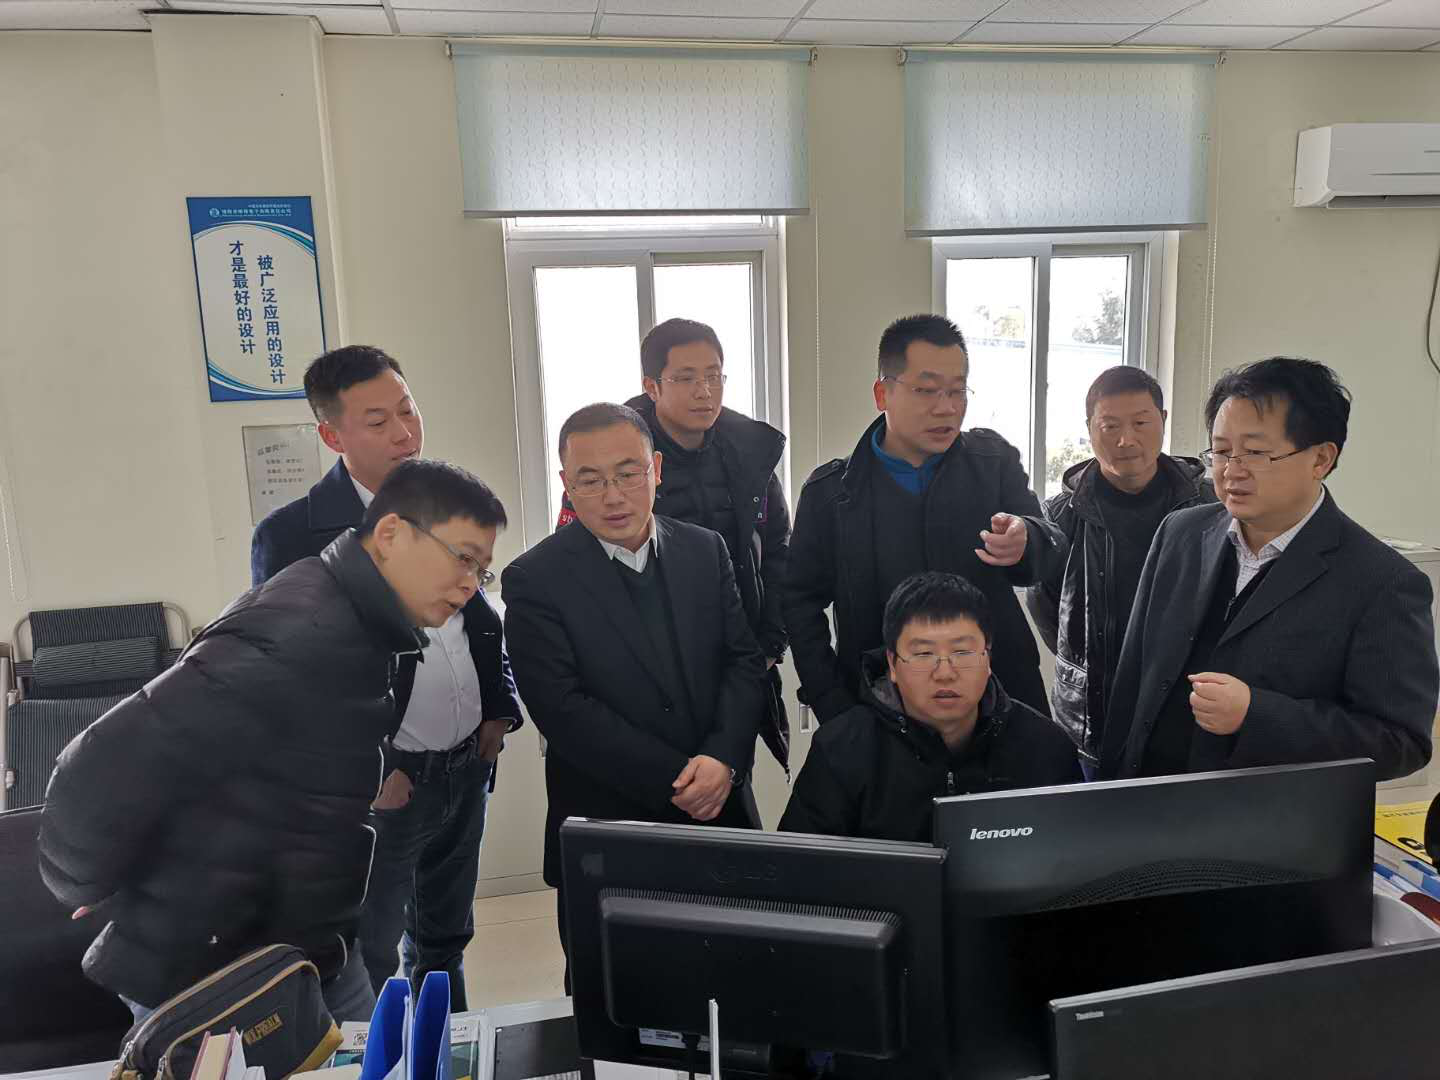 春节假期自动化研究所领导及公司领导 来到技术中心慰问加班员工